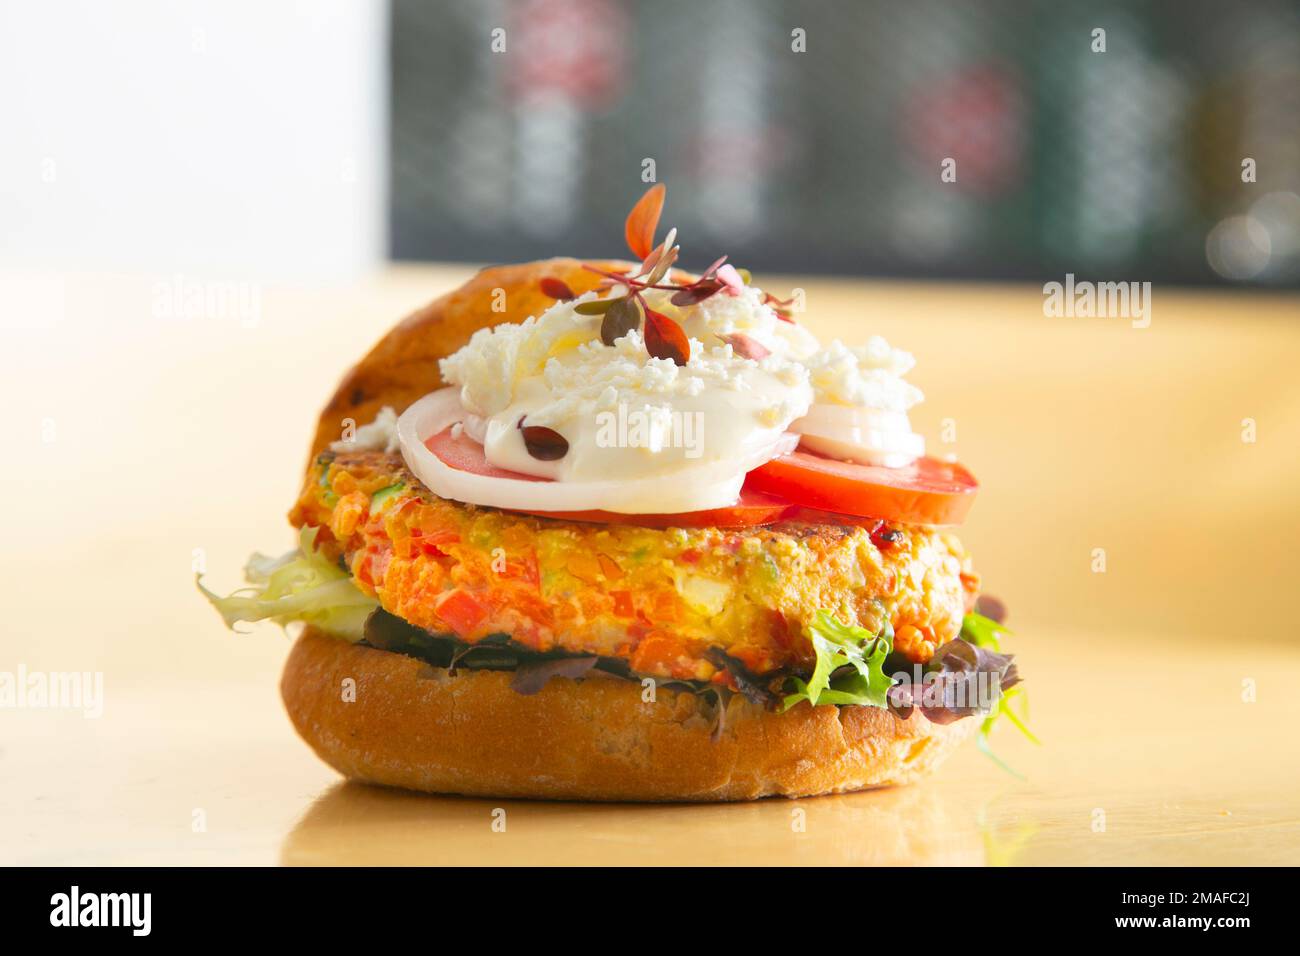 Hamburger végétarien préparé avec un mélange de légumes et de produits tels que le tofu ou le seitan. Banque D'Images